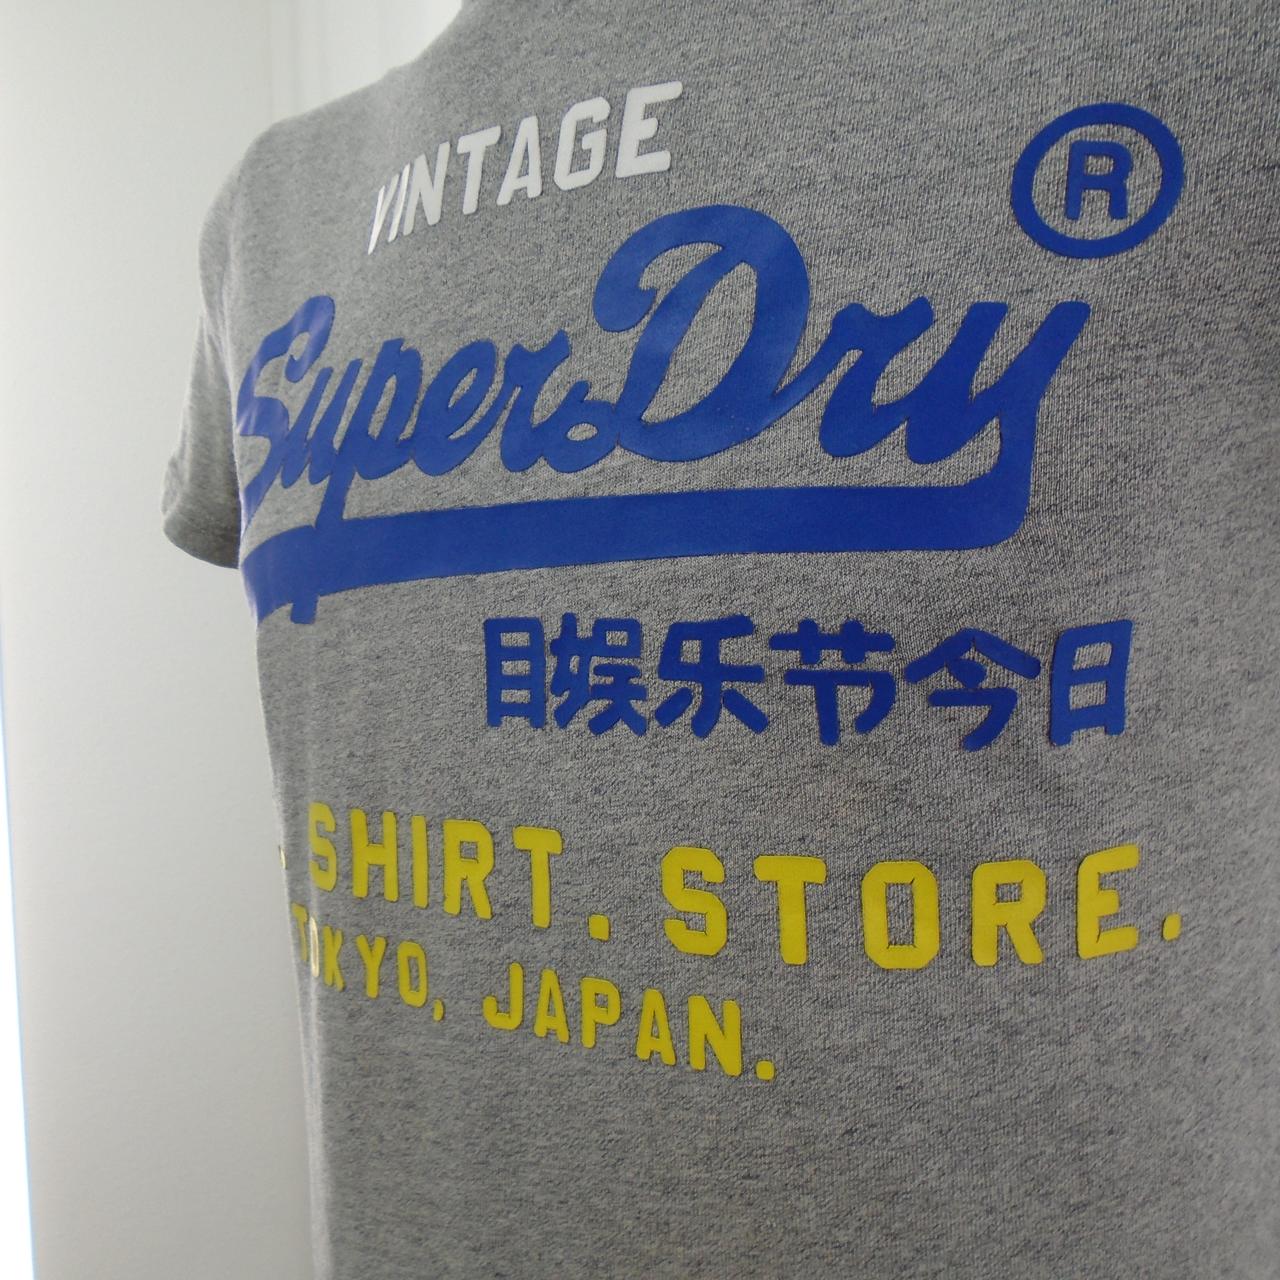 Herren-T-Shirt Superdry Vintage. Grau. XS. Gebraucht. Gut